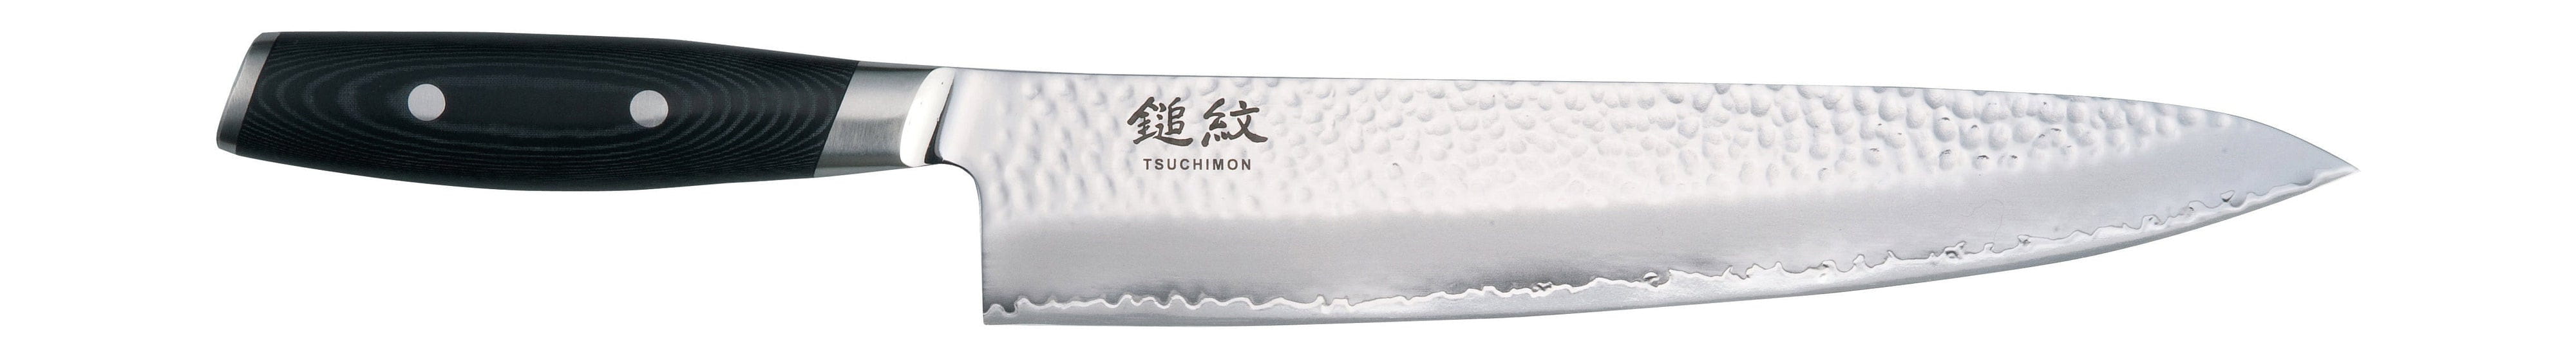 Cuchillo de chef de yaxell tsuchimon, 25,5 cm